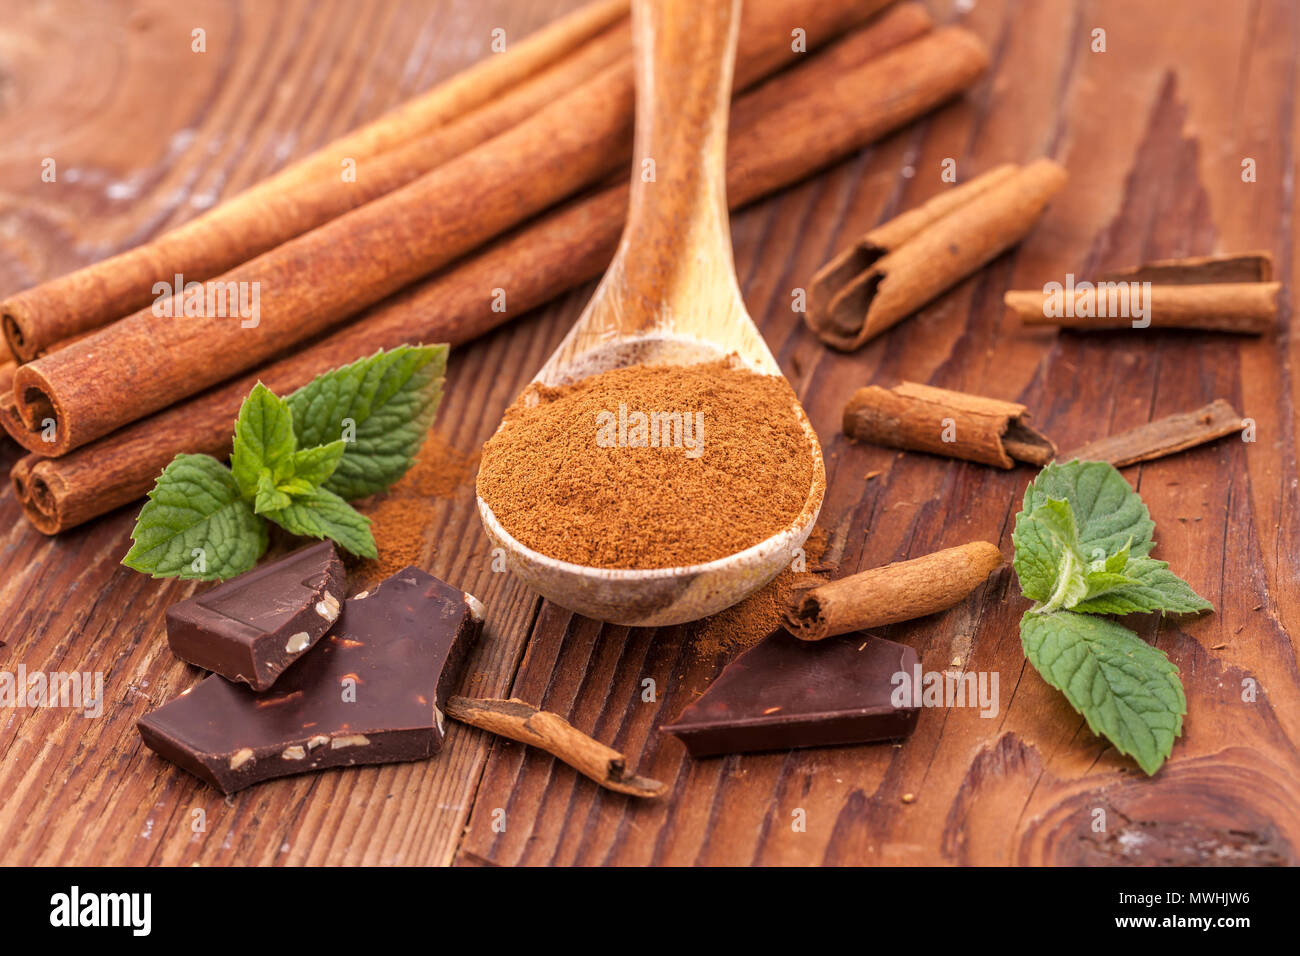 Cannella in polvere su un cucchiaio di legno, foglie di menta, bastoncini di cannella, e pezzetti di cioccolato fondente. Foto Stock